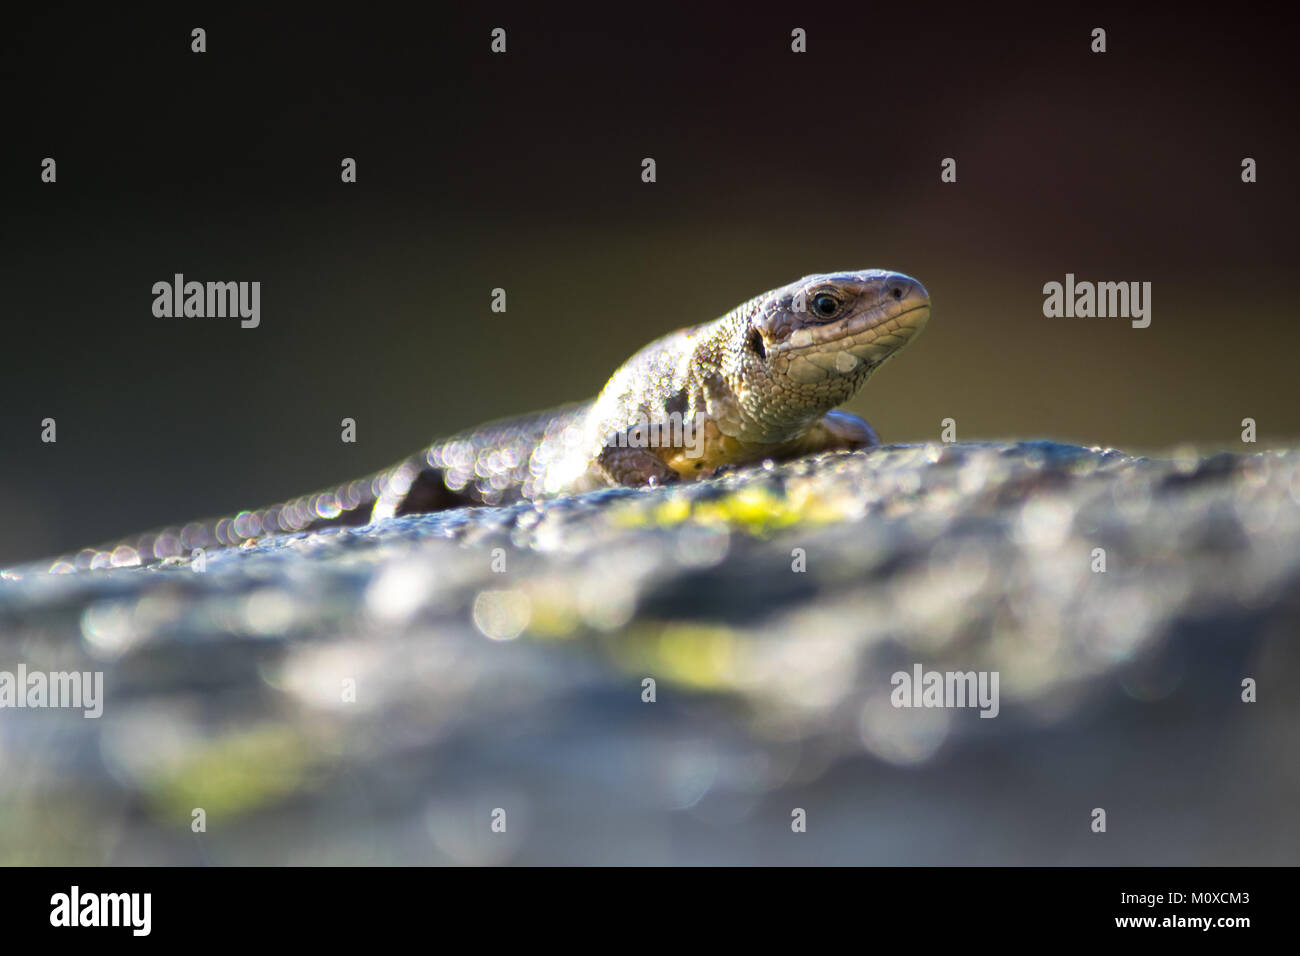 Common Lizard basking in the Sun.   Garden Wildlife in the UK Stock Photo